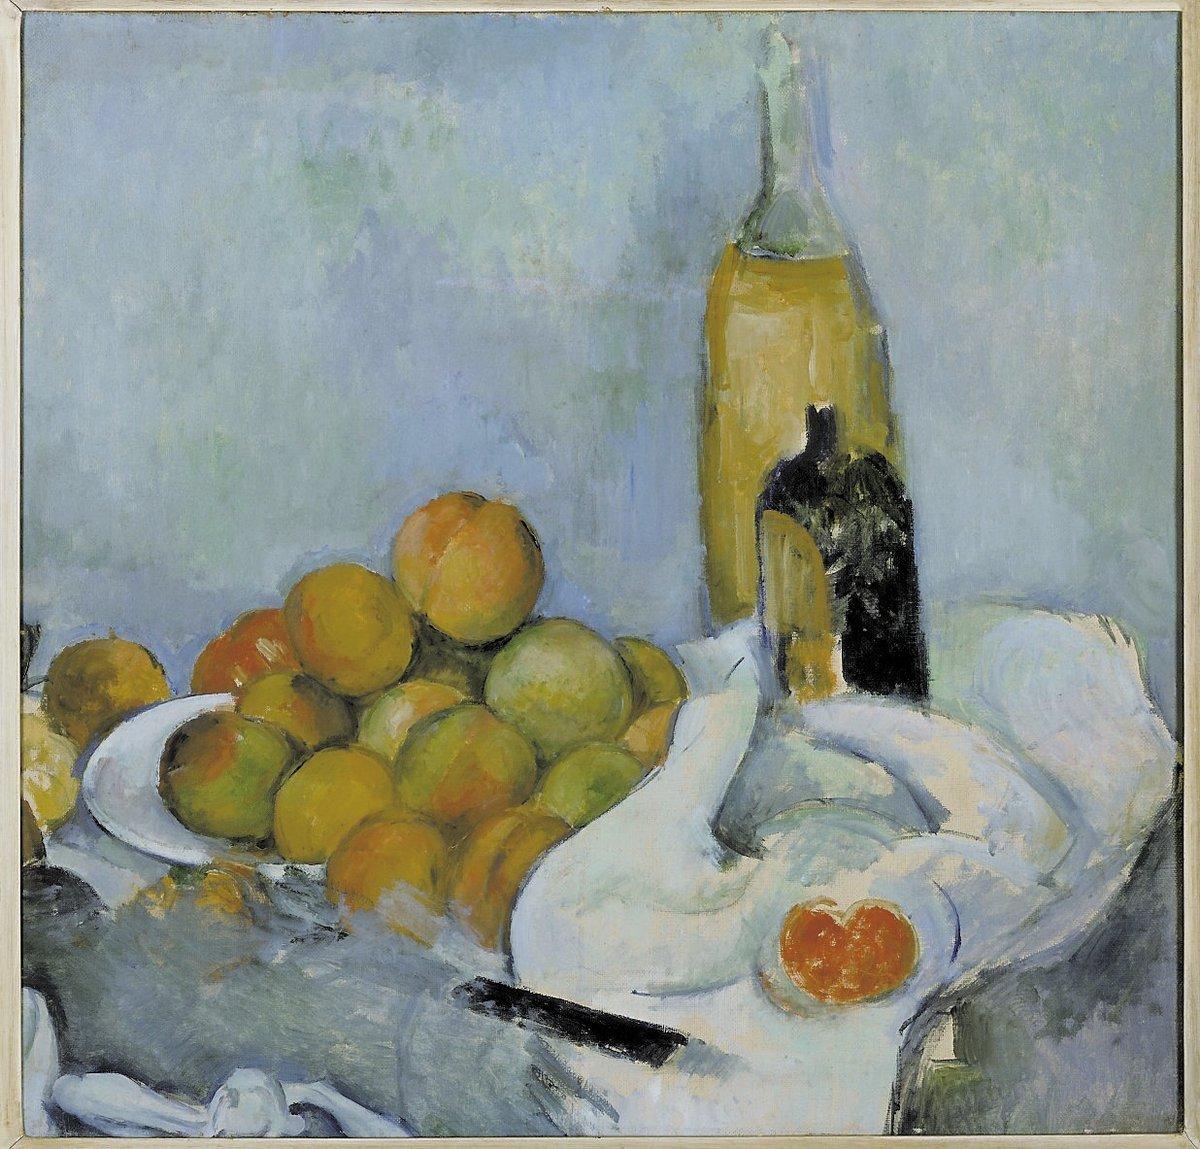 Paul Cézanne: ”Flaskor och persikor”, cirka 1890. Olja på duk. Stedelijk Museum, Amsterdam.